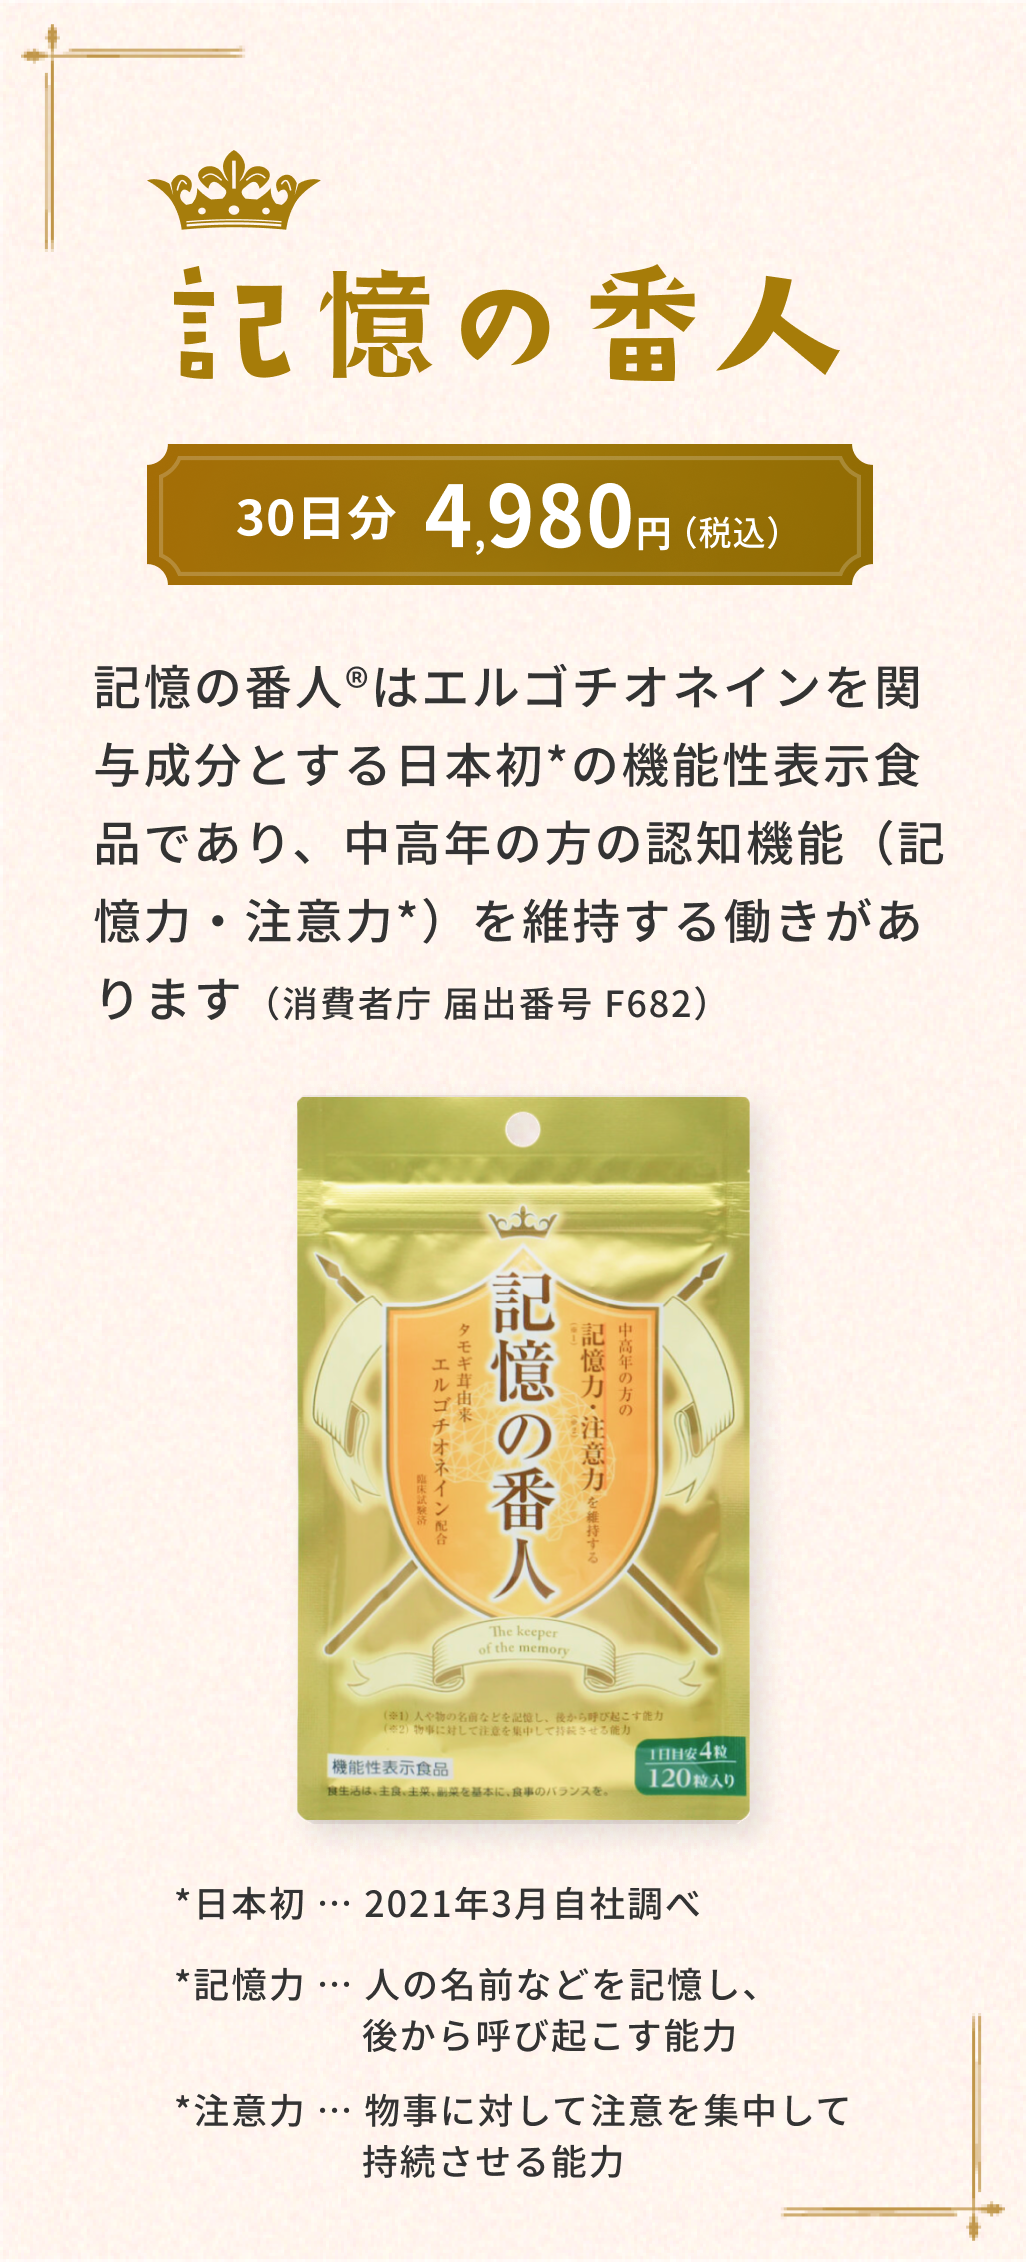 記憶の番人 記憶の番人®はエルゴチオネインを関与成分とする日本初の機能性表示食品であり、中高年の方の認知機能（記憶力・注意力）を維持する働きがあります（消費者庁 届出番号 F682）